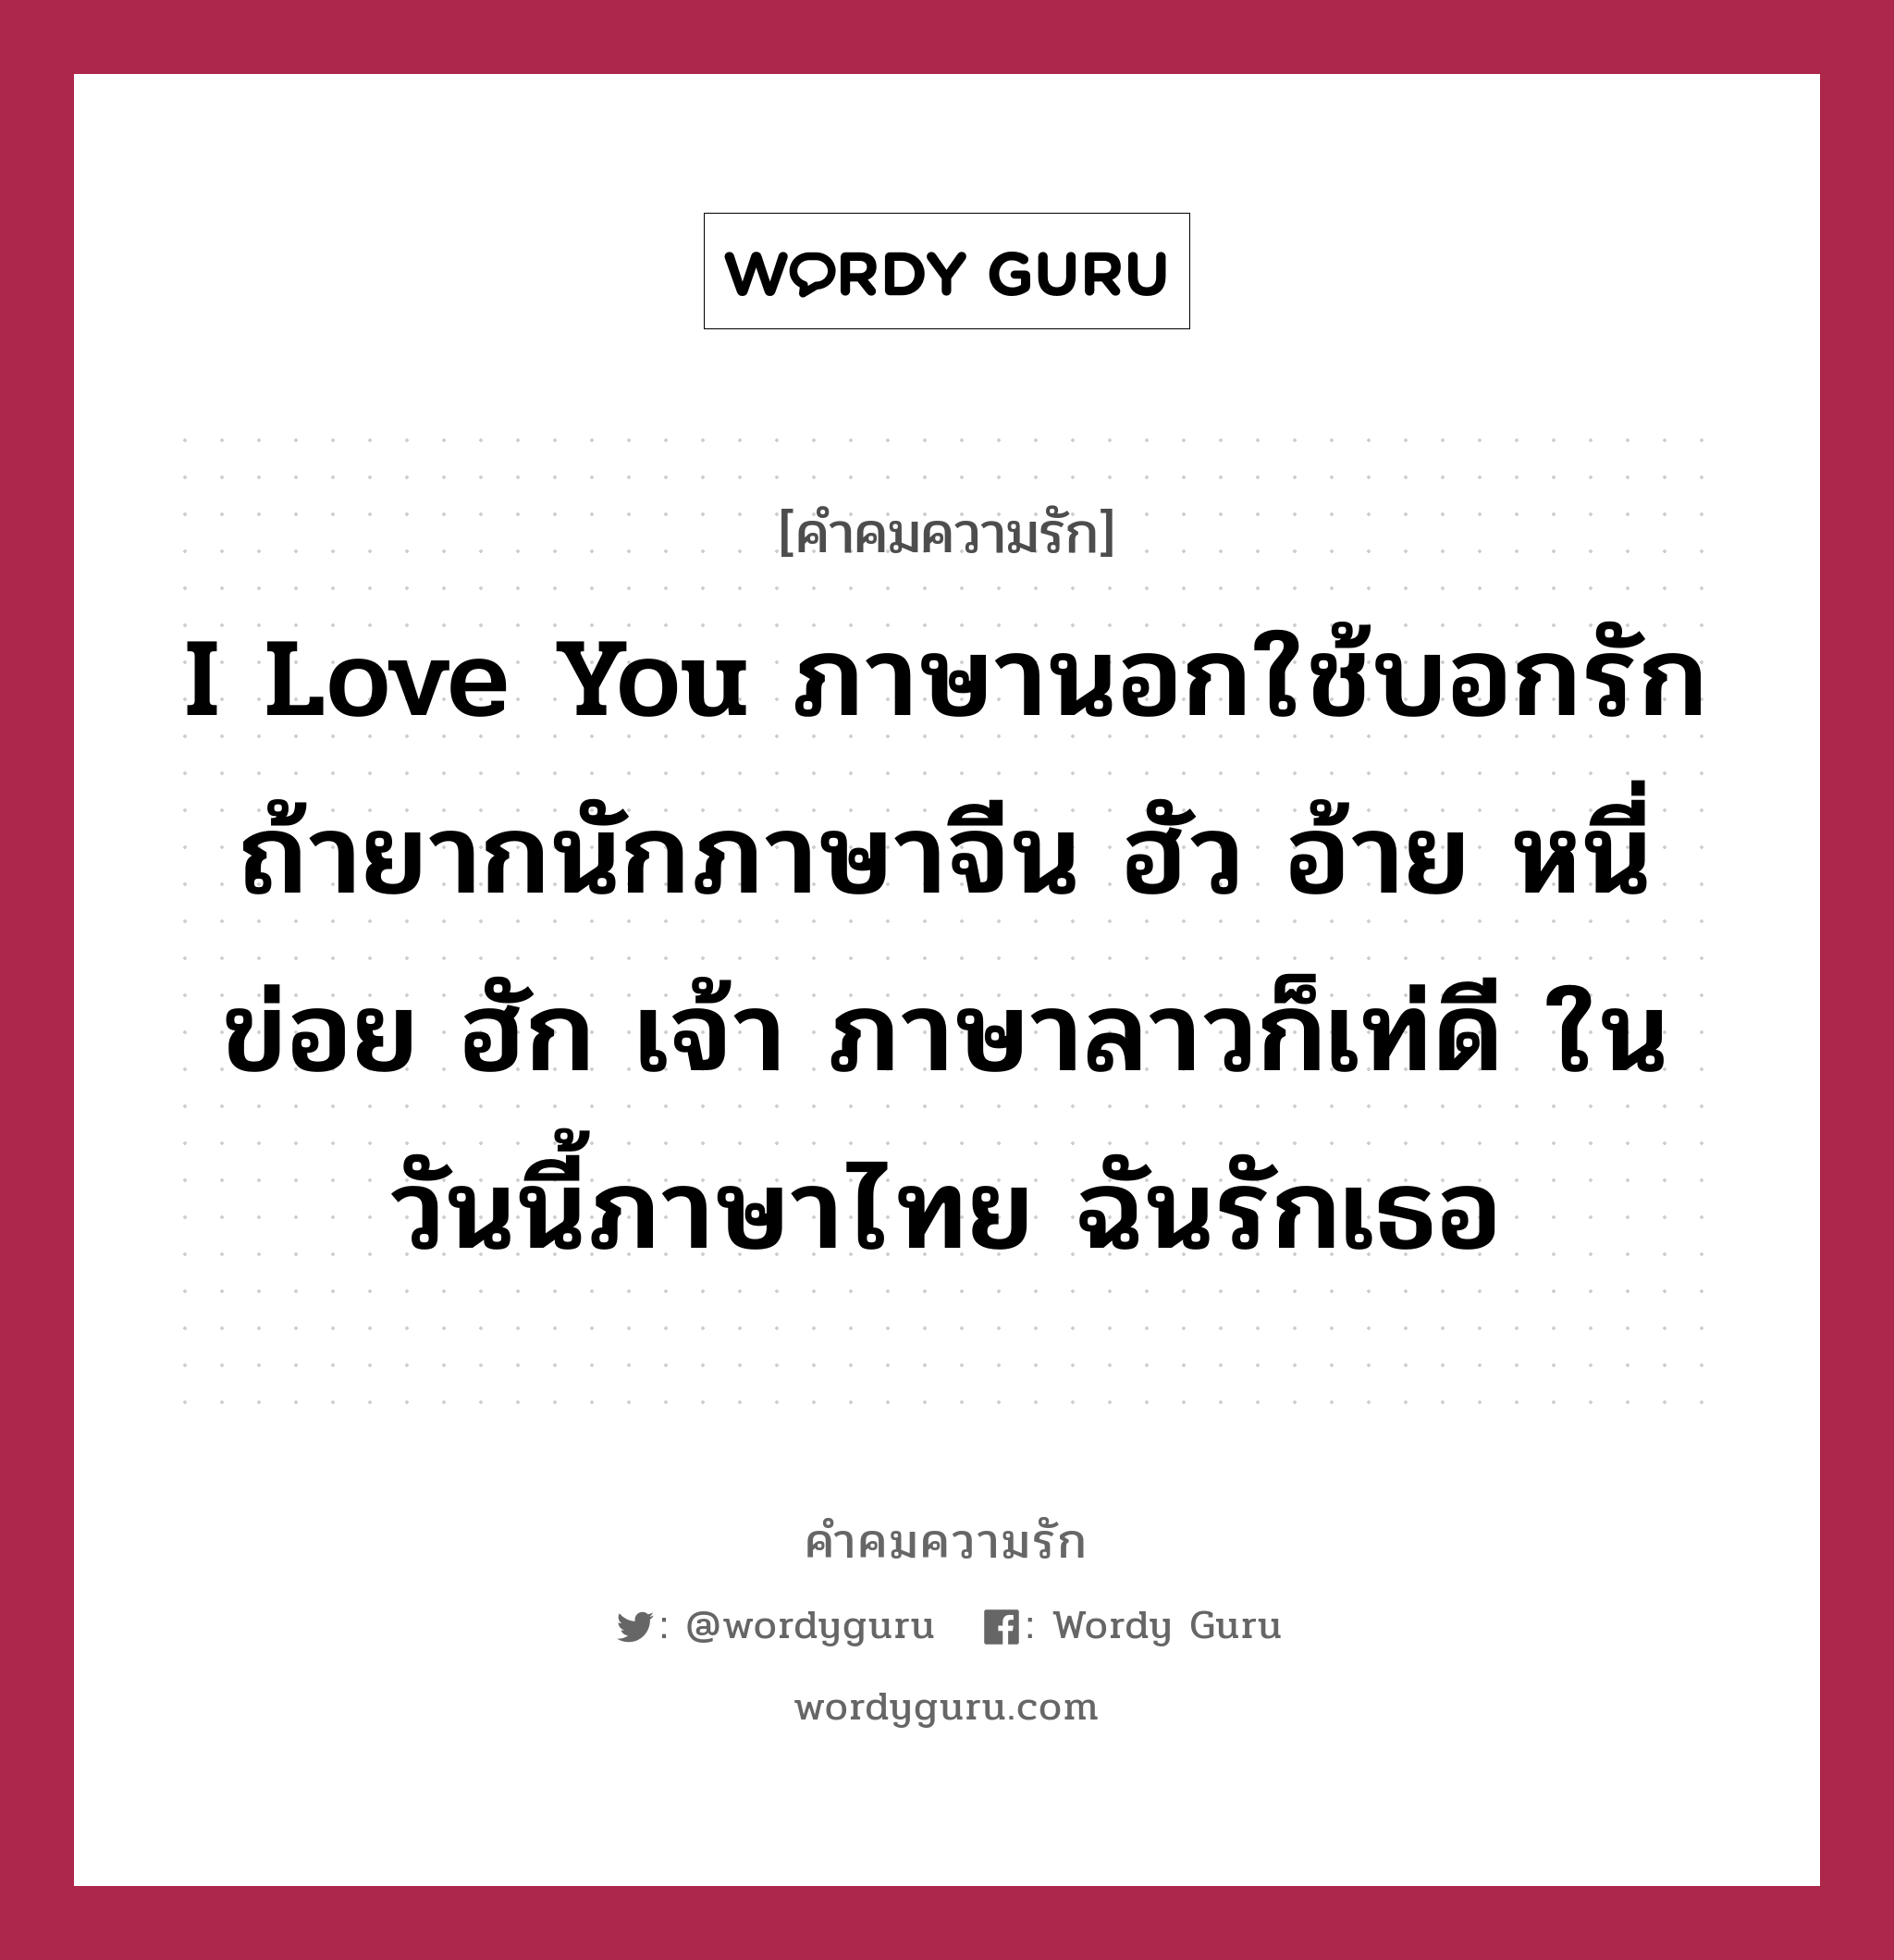 I love You ภาษานอกใช้บอกรัก ถ้ายากนักภาษาจีน ฮัว อ้าย หนี่ ข่อย ฮัก เจ้า ภาษาลาวก็เท่ดี ในวันนี้ภาษาไทย ฉันรักเธอ, คำคมความรัก I love You ภาษานอกใช้บอกรัก ถ้ายากนักภาษาจีน ฮัว อ้าย หนี่ ข่อย ฮัก เจ้า ภาษาลาวก็เท่ดี ในวันนี้ภาษาไทย ฉันรักเธอ